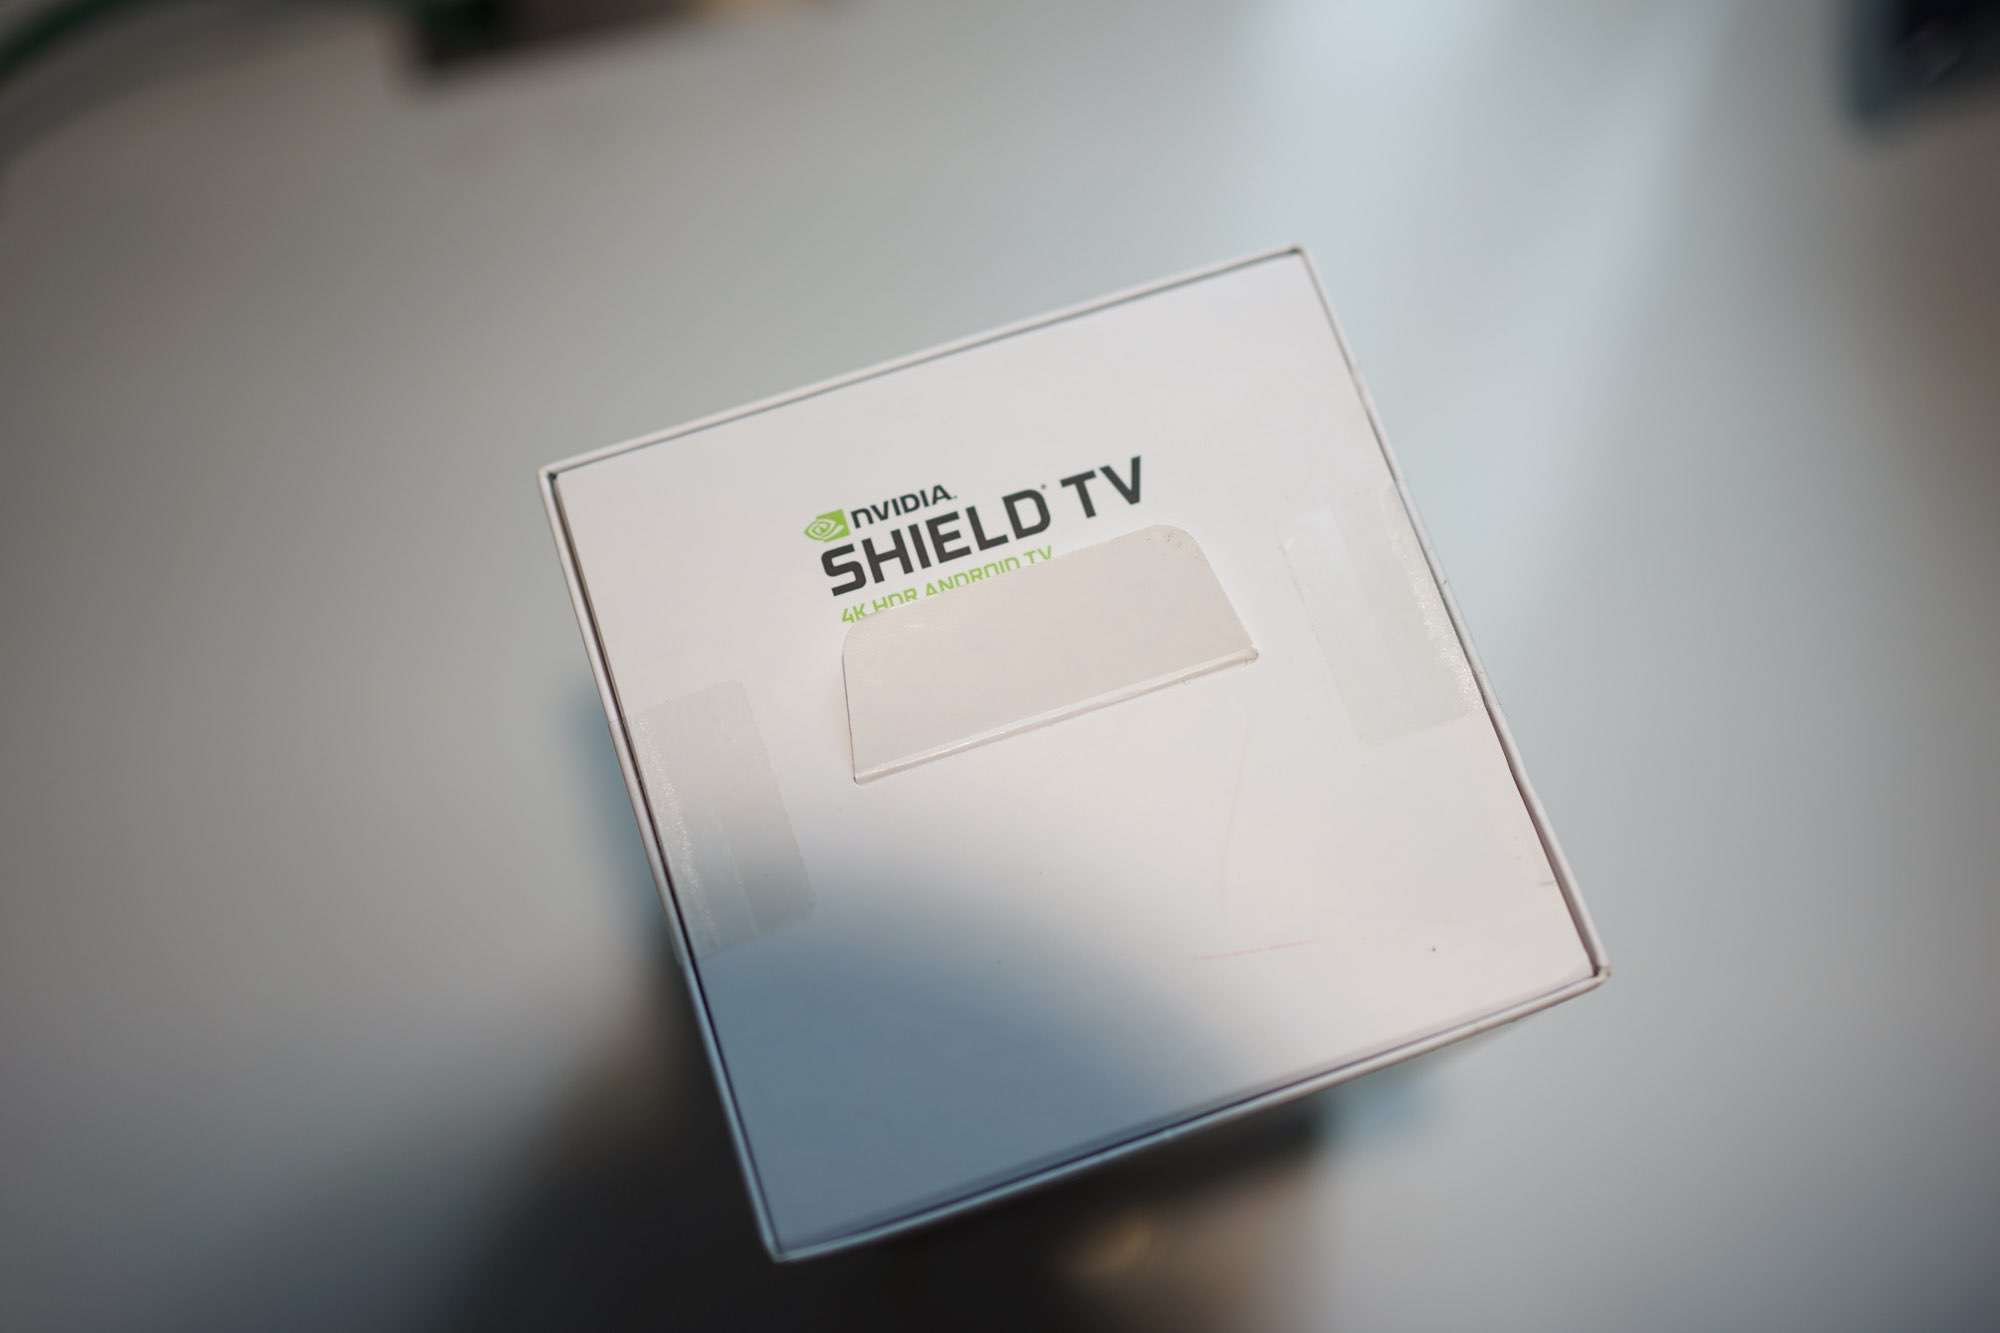 รีวิว Nvidia Shield TV